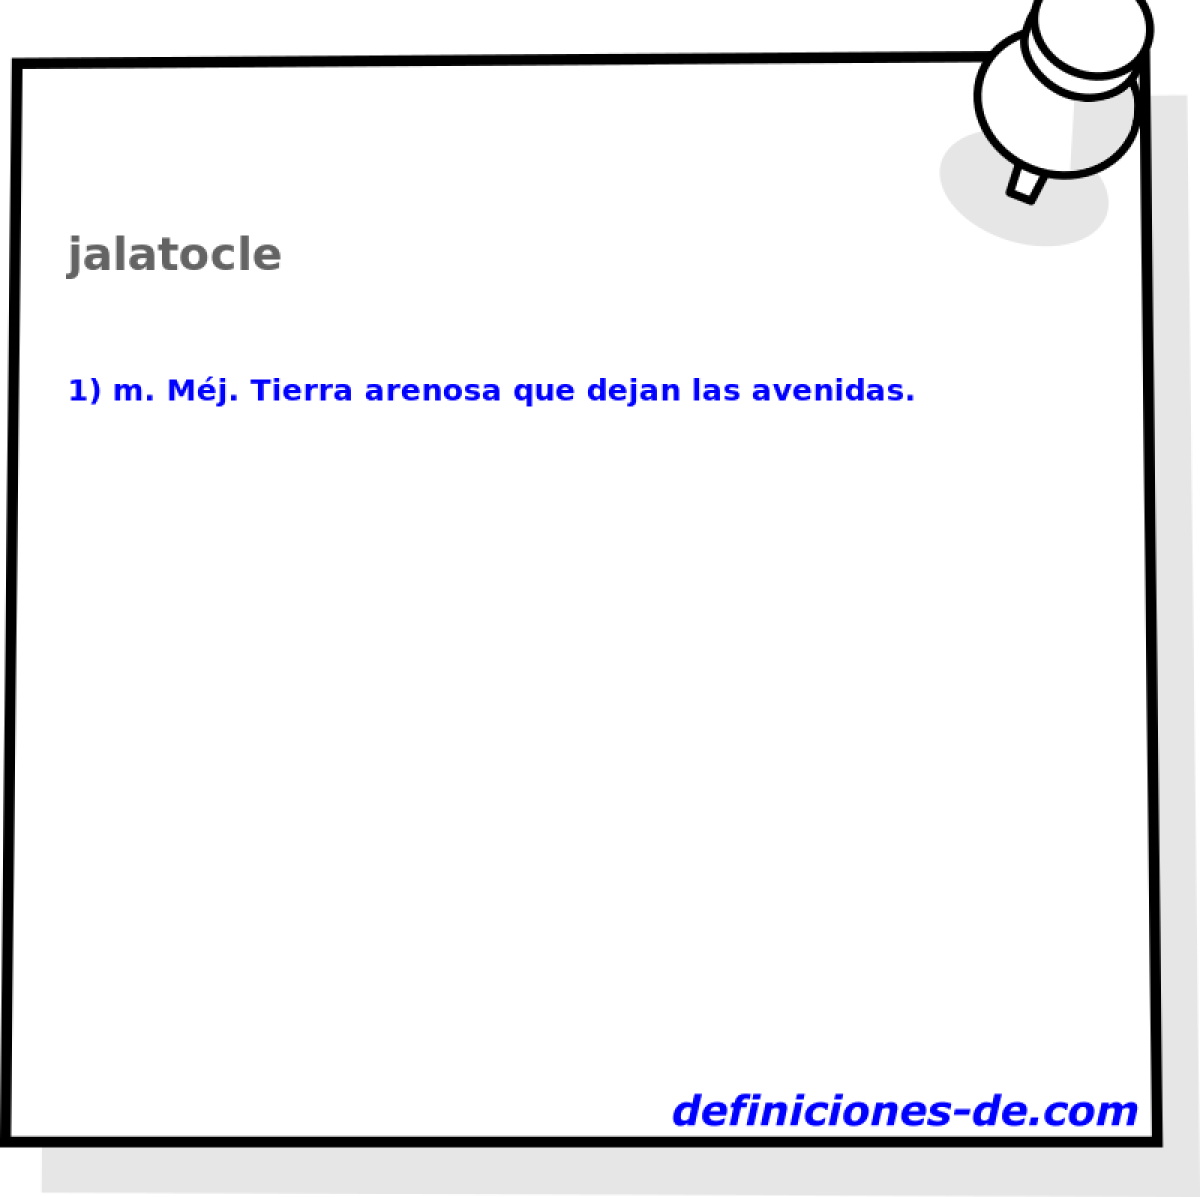 jalatocle 